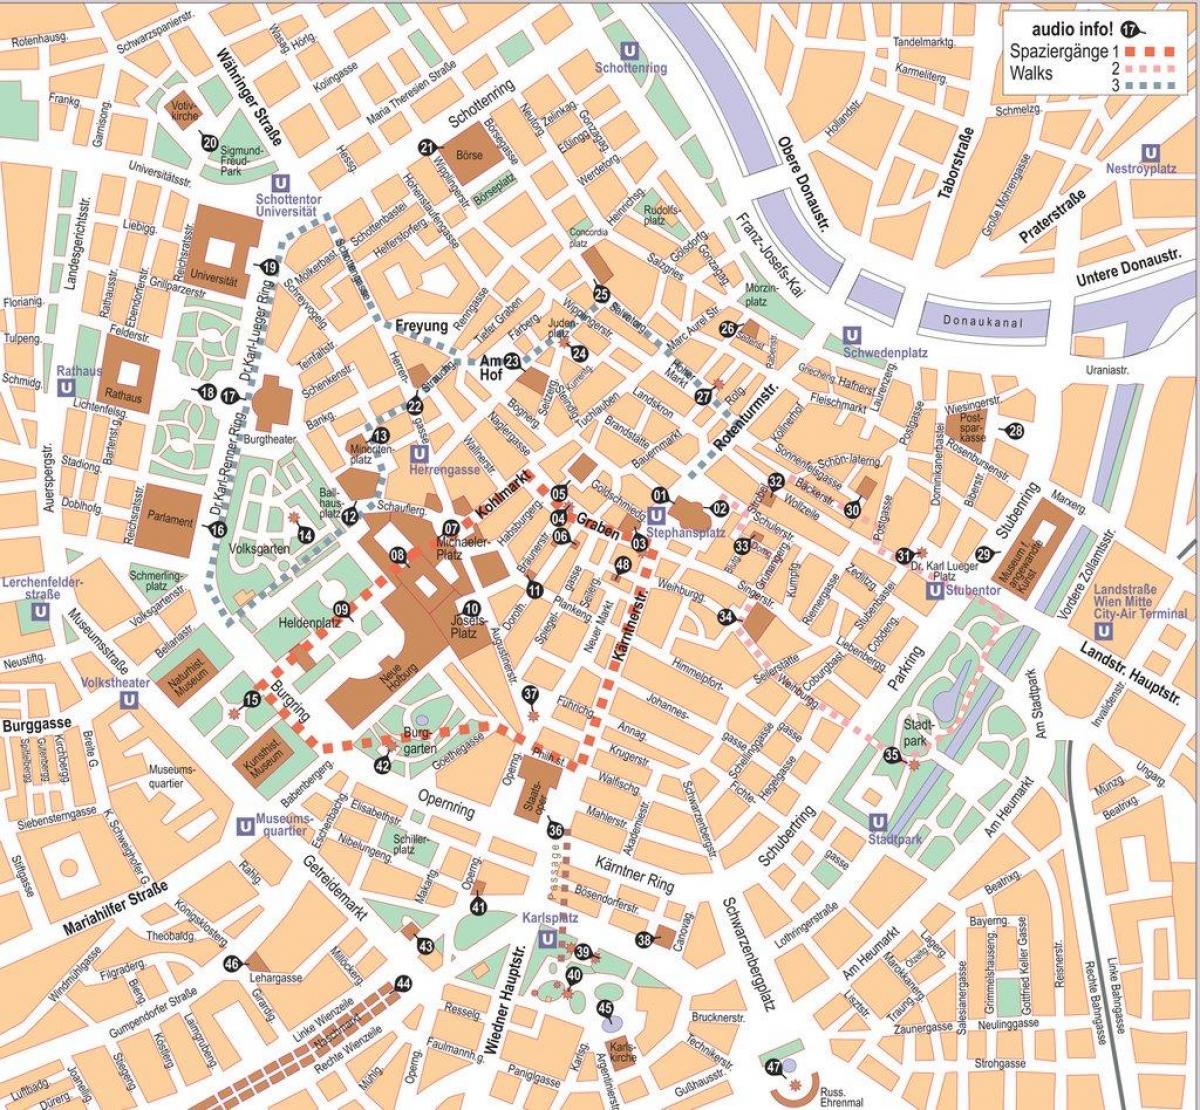 Mapa de Wien centro